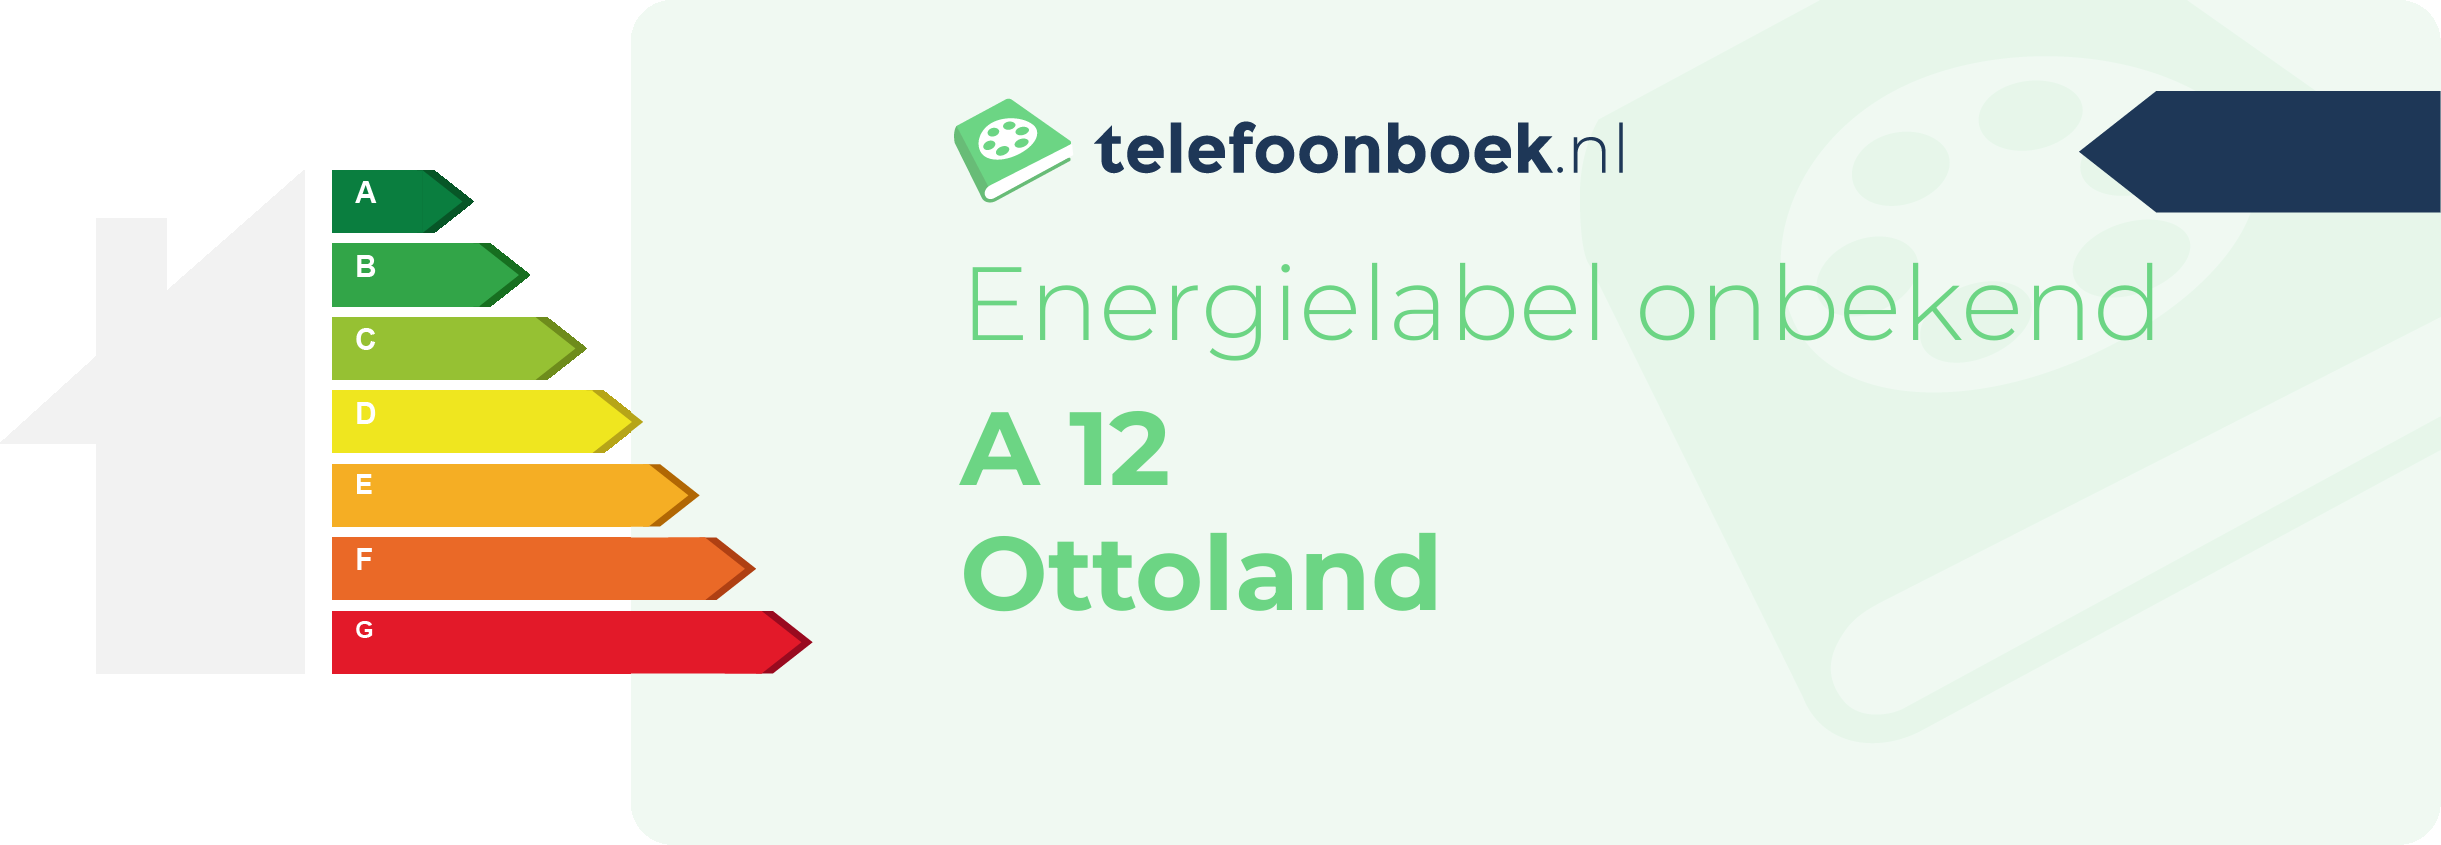 Energielabel A 12 Ottoland